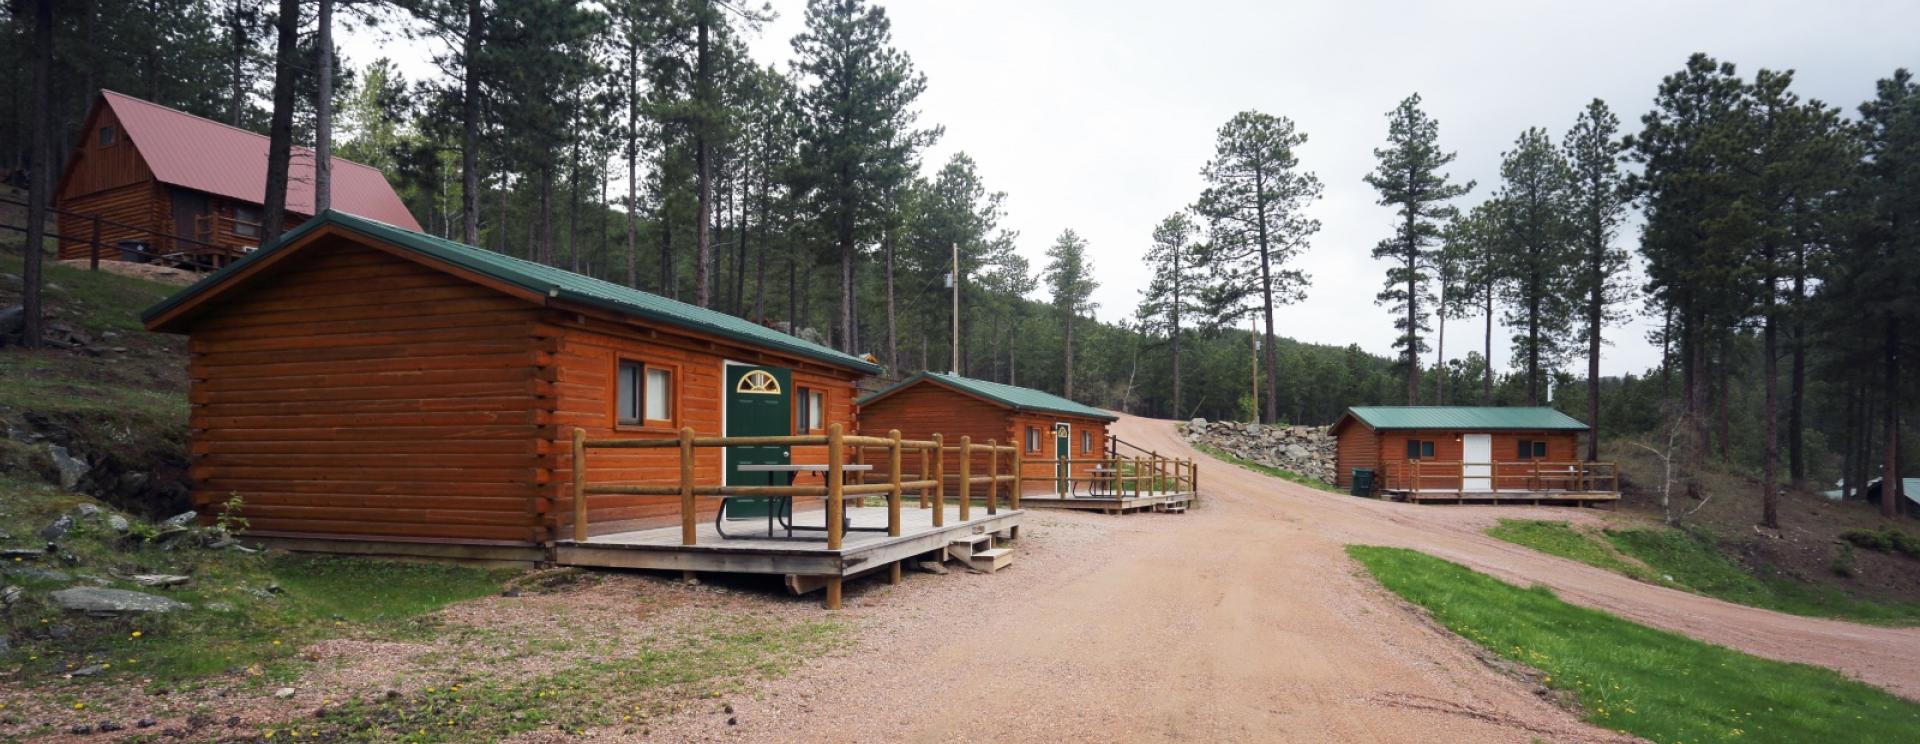 Holy Smoke RV Camping Resort